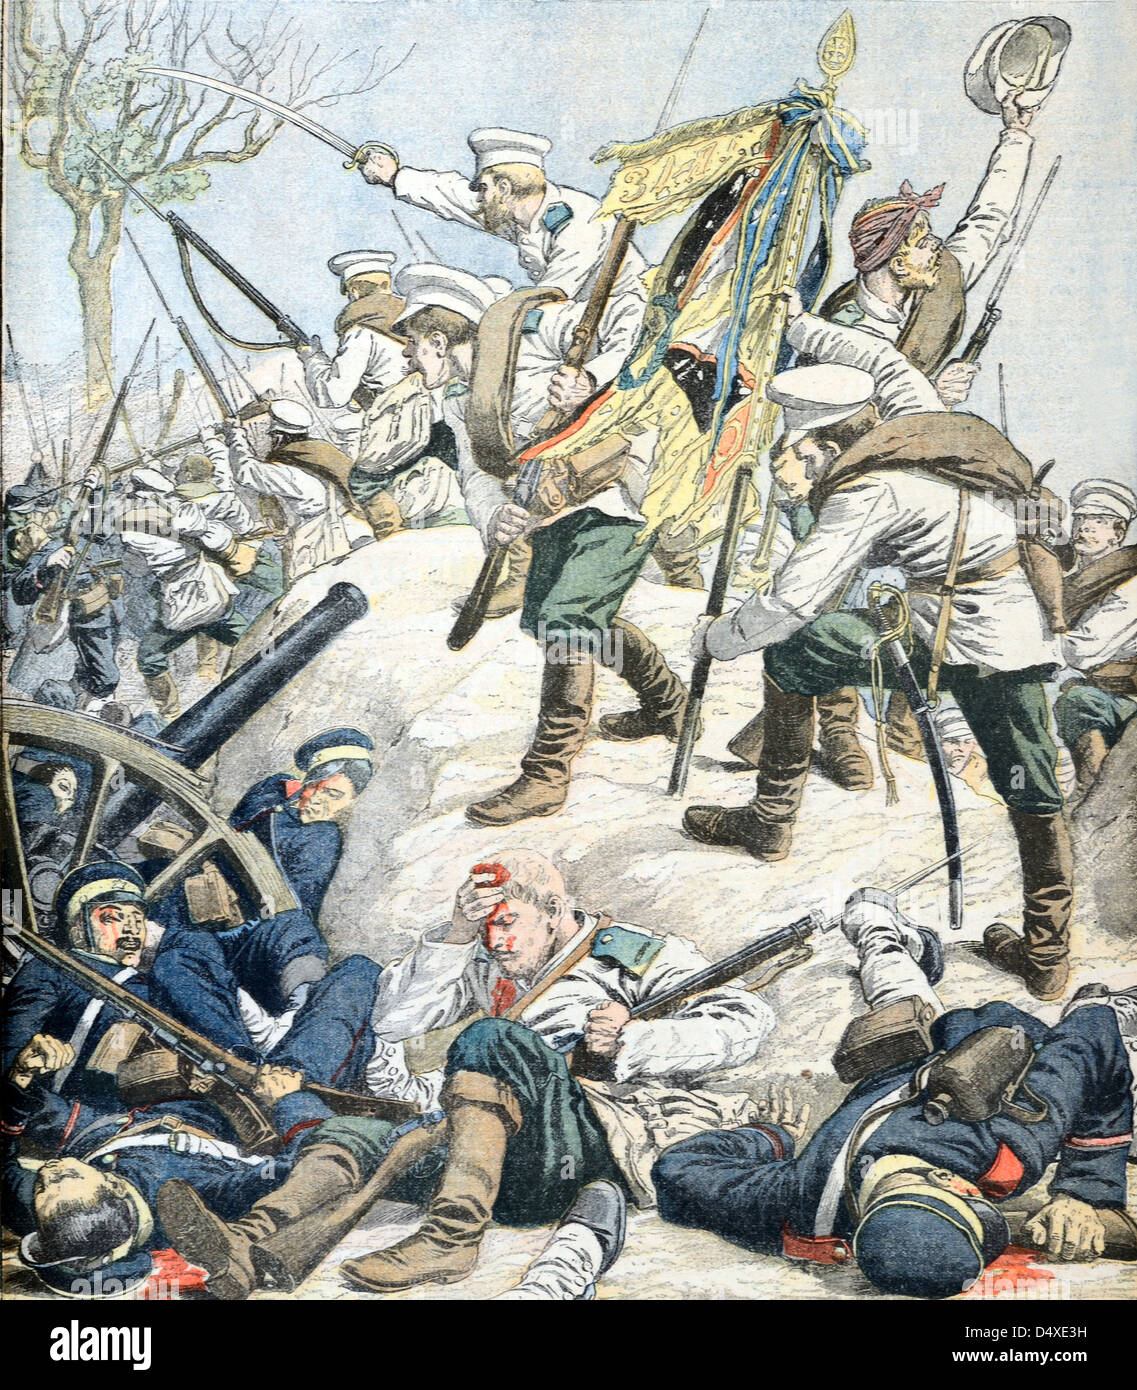 Krieg in der Mandschurei Russisch-Japanischer Krieg (Okt 1904/05) Klassiker der Illustration Stockfoto